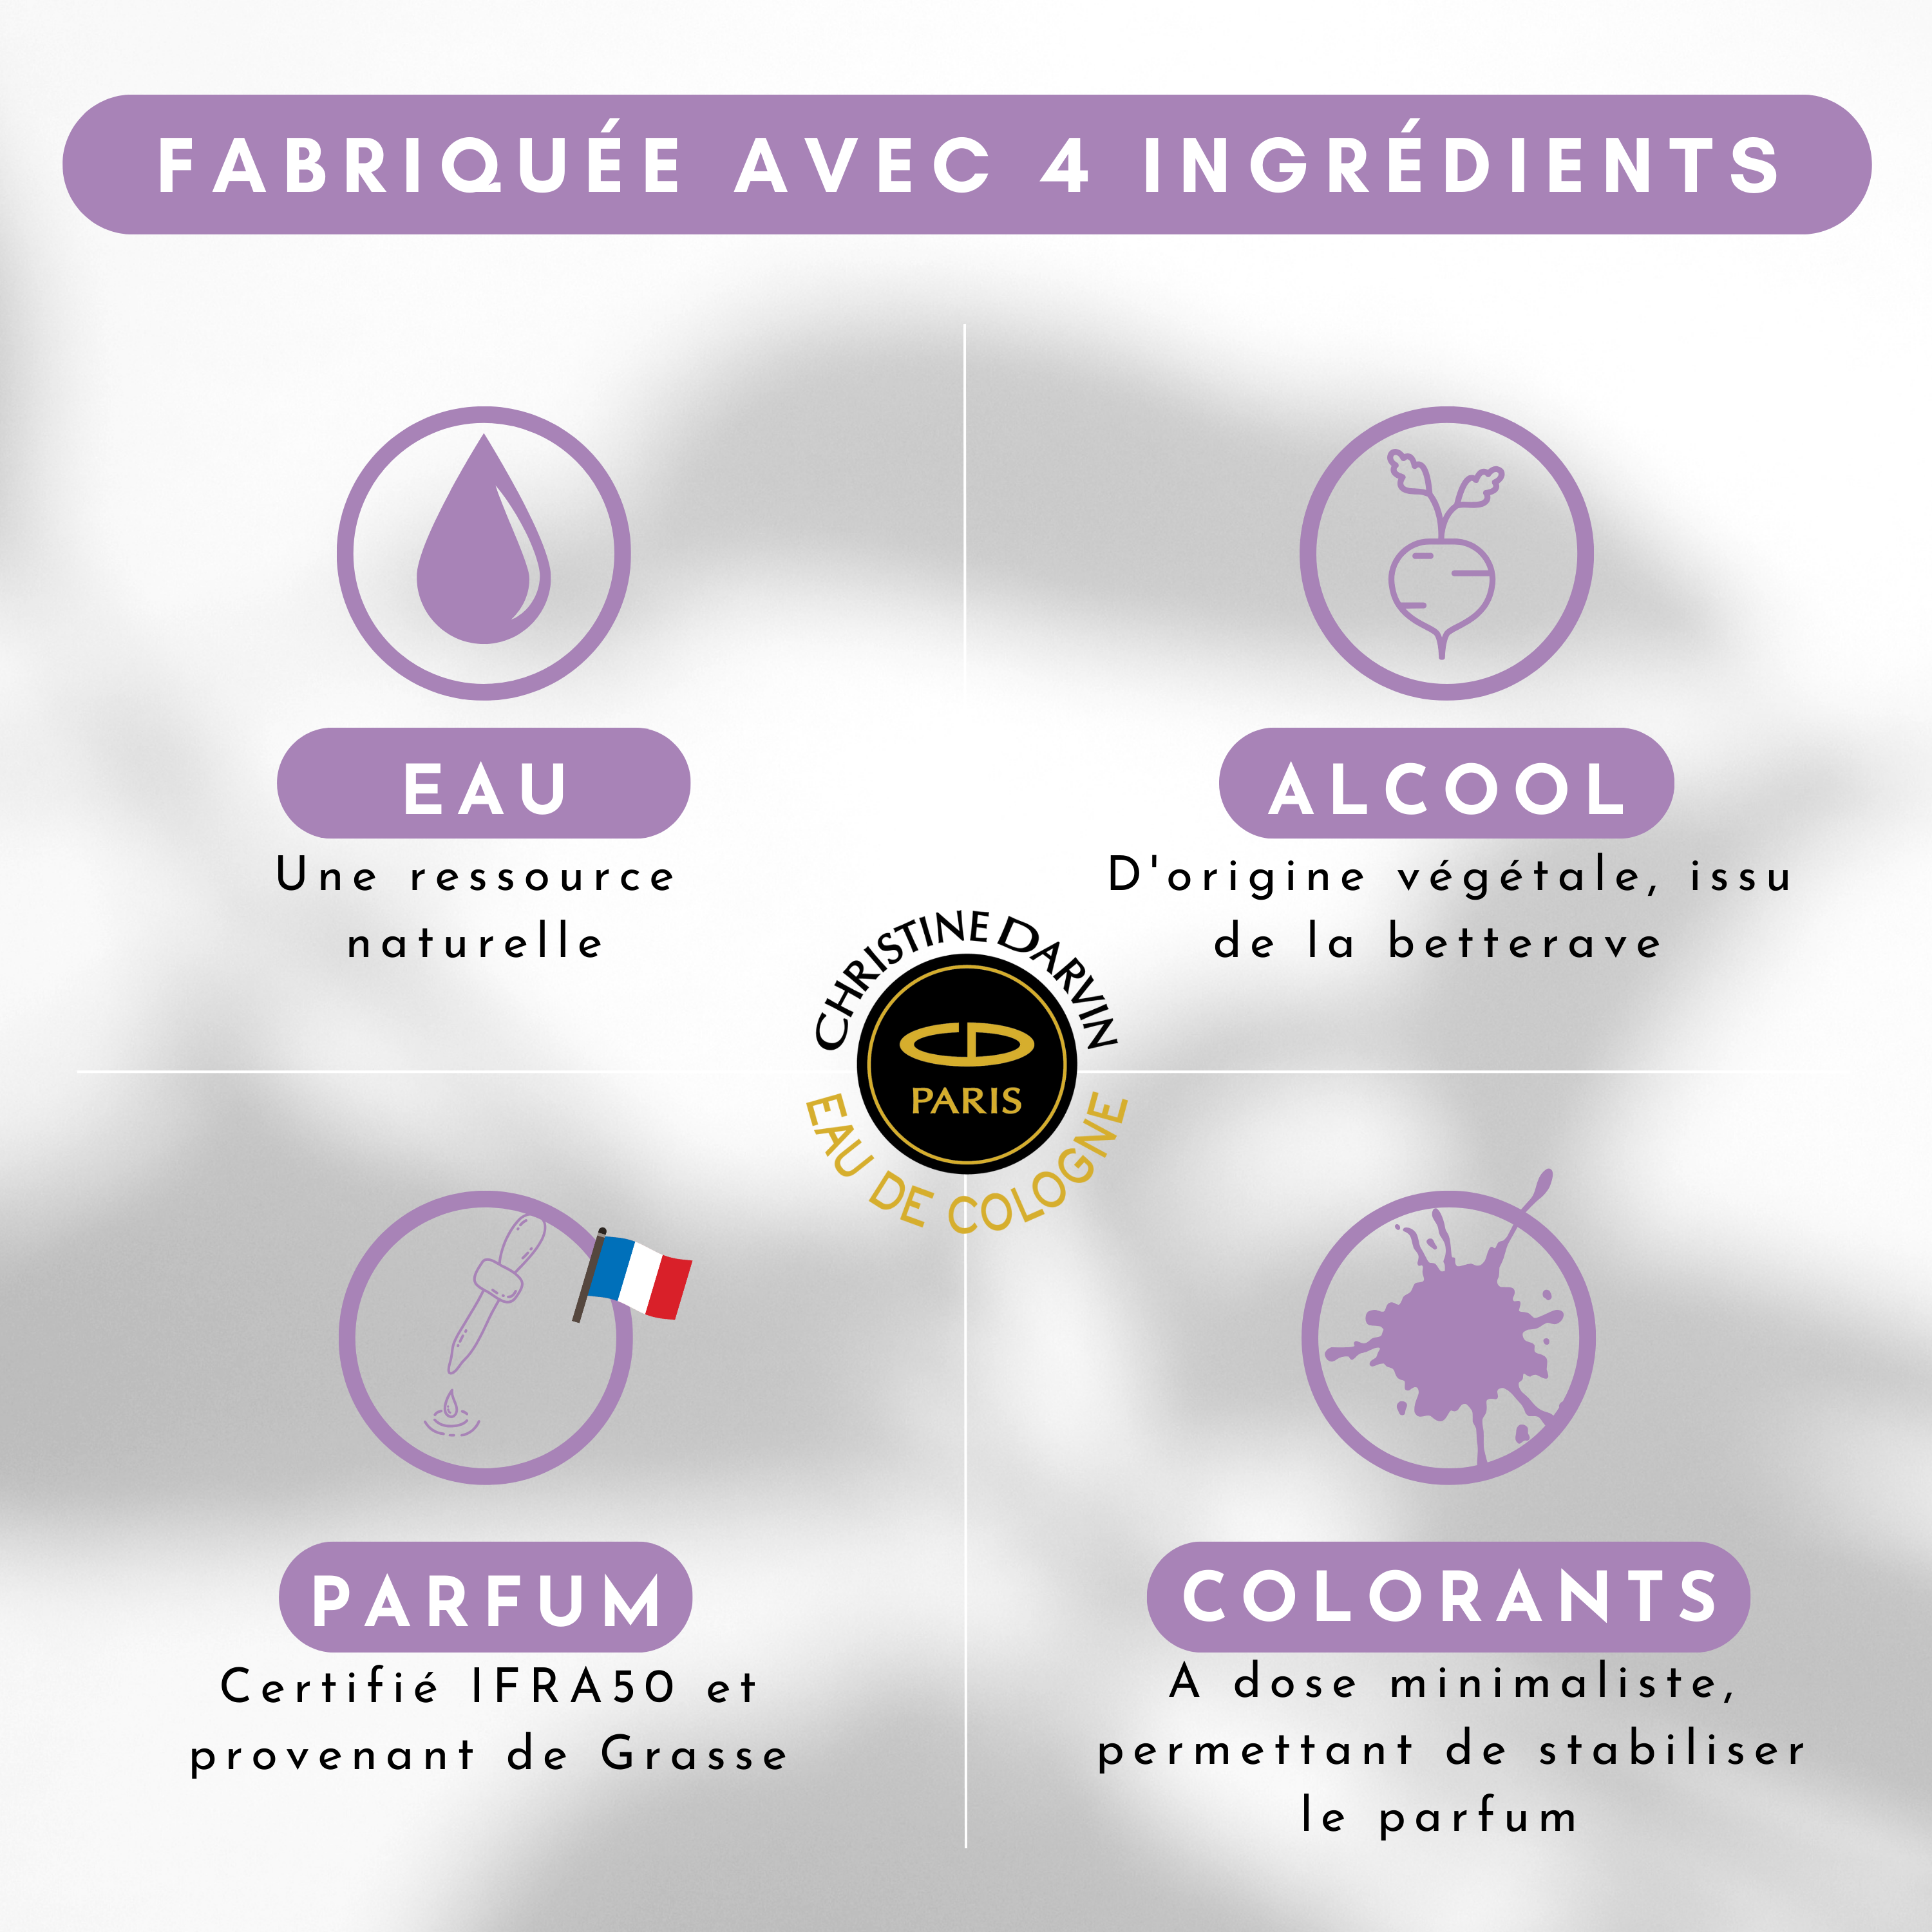 Ingrédient Eau de Cologne parfum Lavande 97% d'origine naturelle et 100% français